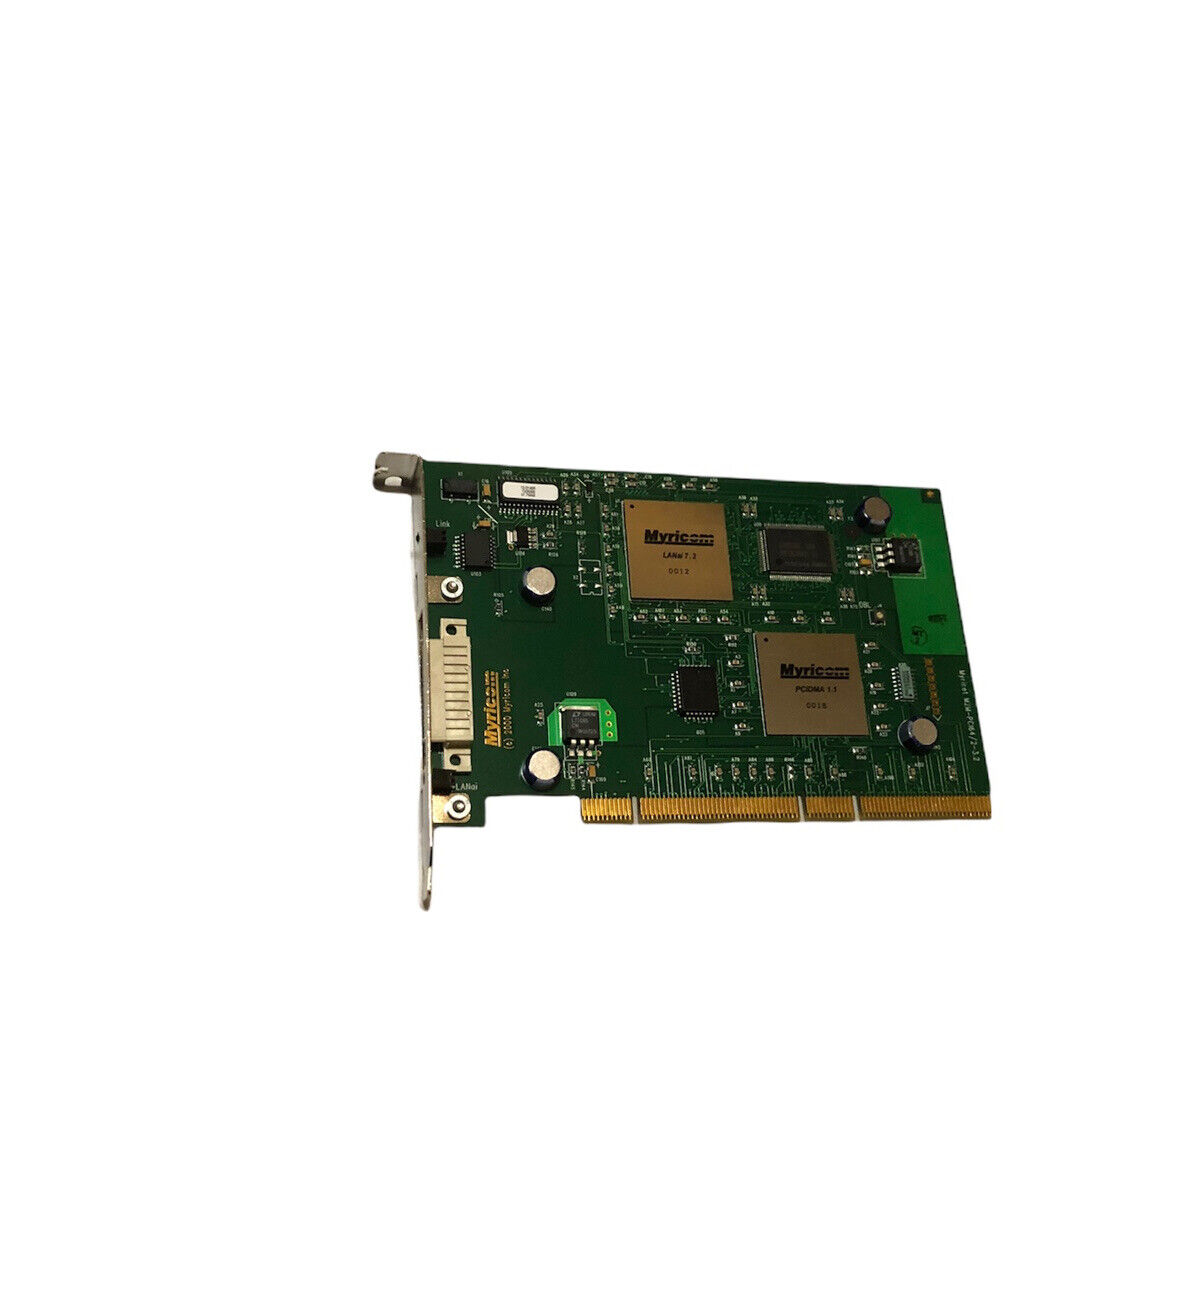 Myricom M2M-PCI64 PCI Myrinet interface card